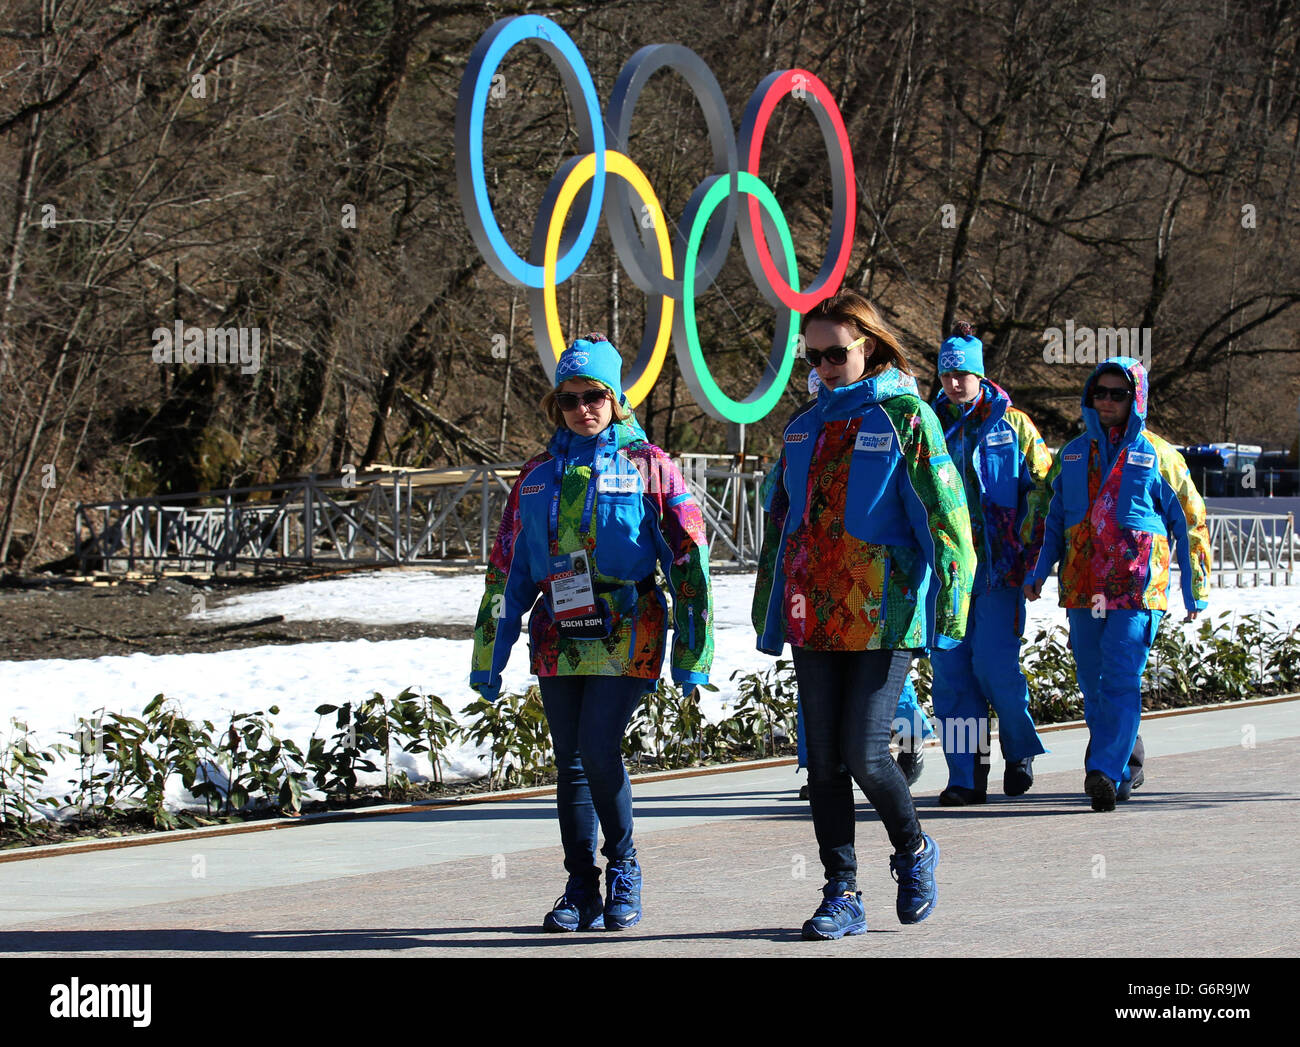 Jeux Olympiques d'hiver de Sotchi - activité pré-Jeux - Dimanche.Les gens marchent devant un panneau olympique à la station de ski alpin Rosa Khutor en amont des Jeux olympiques d'hiver de Sotchi 2014. Banque D'Images